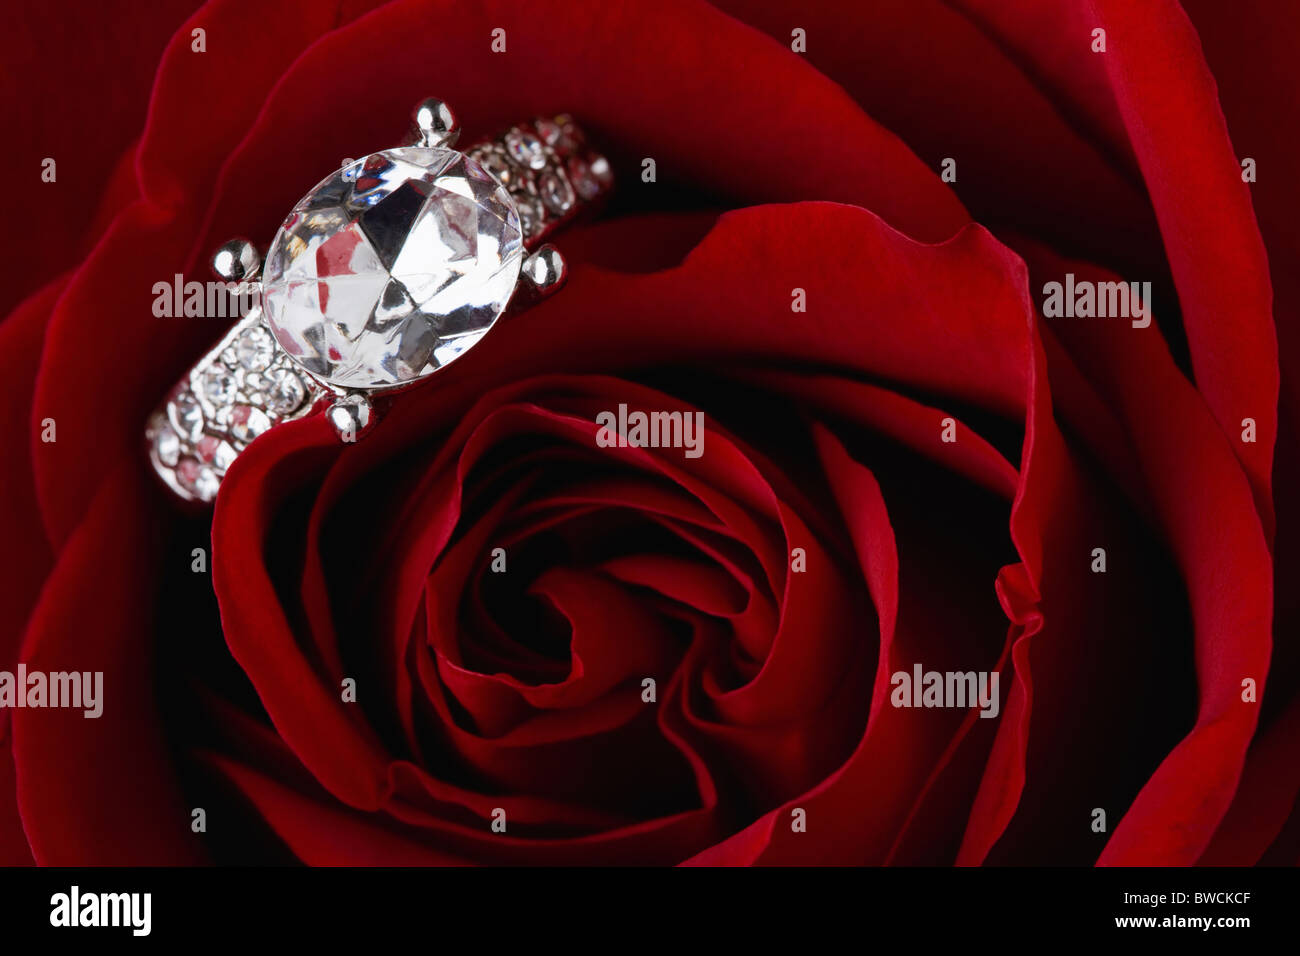 États-unis, Illinois, Metamora, anneau de diamant sur rose rouge Banque D'Images